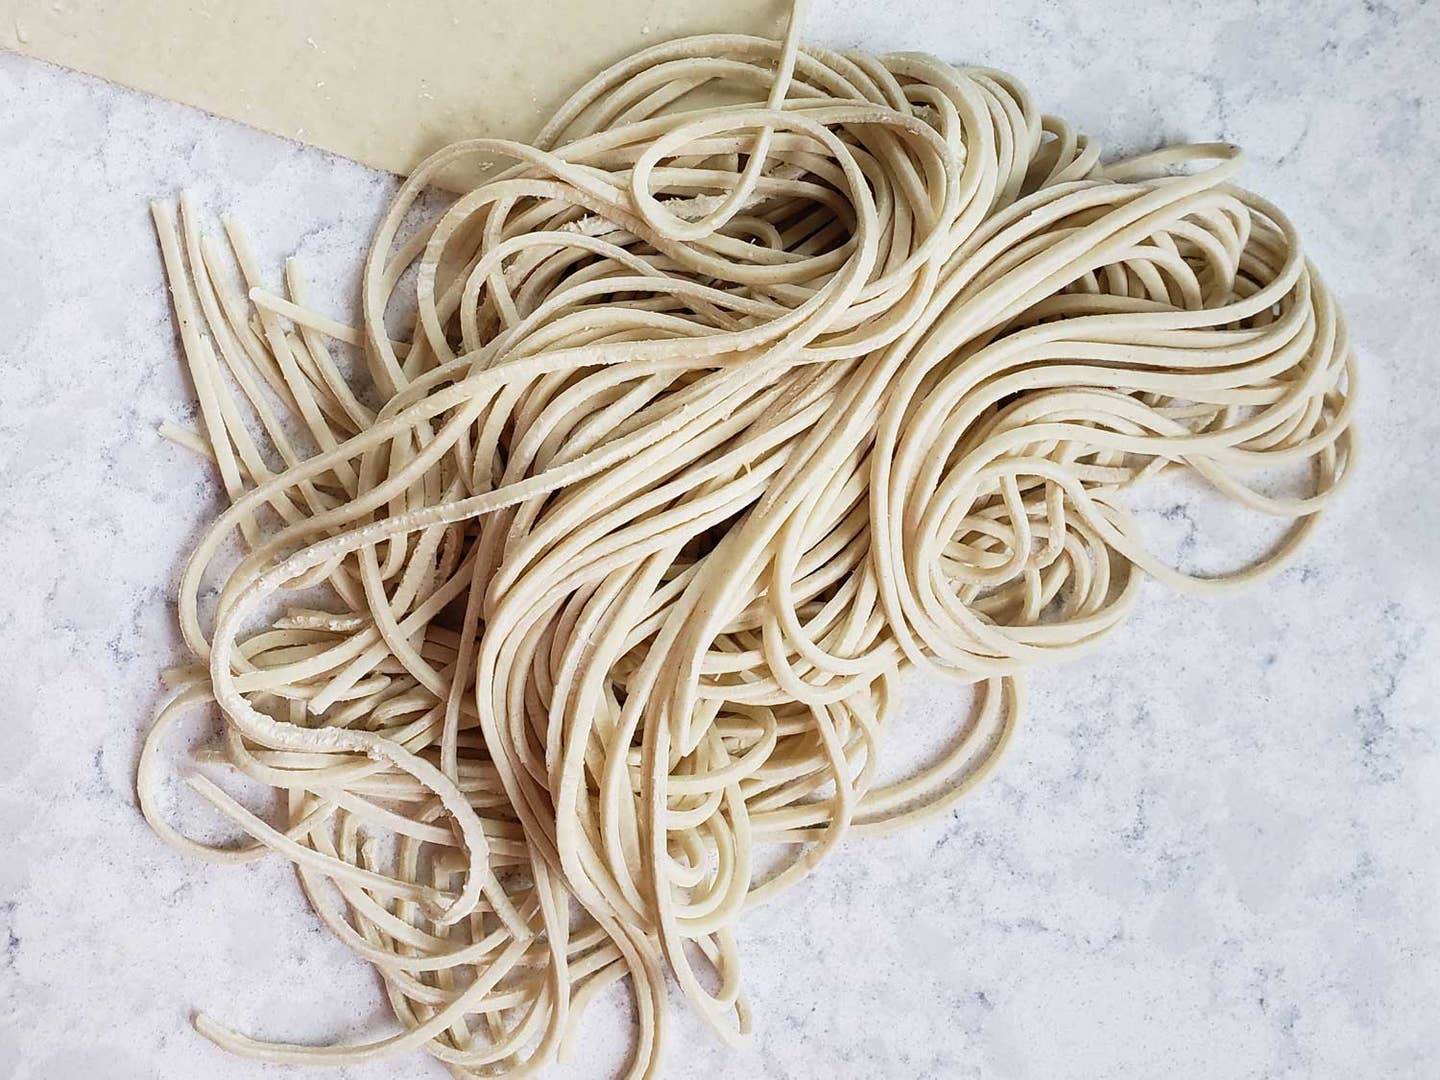 Chef Hugh Amano Explains How To Make Handmade Ramen Noodles